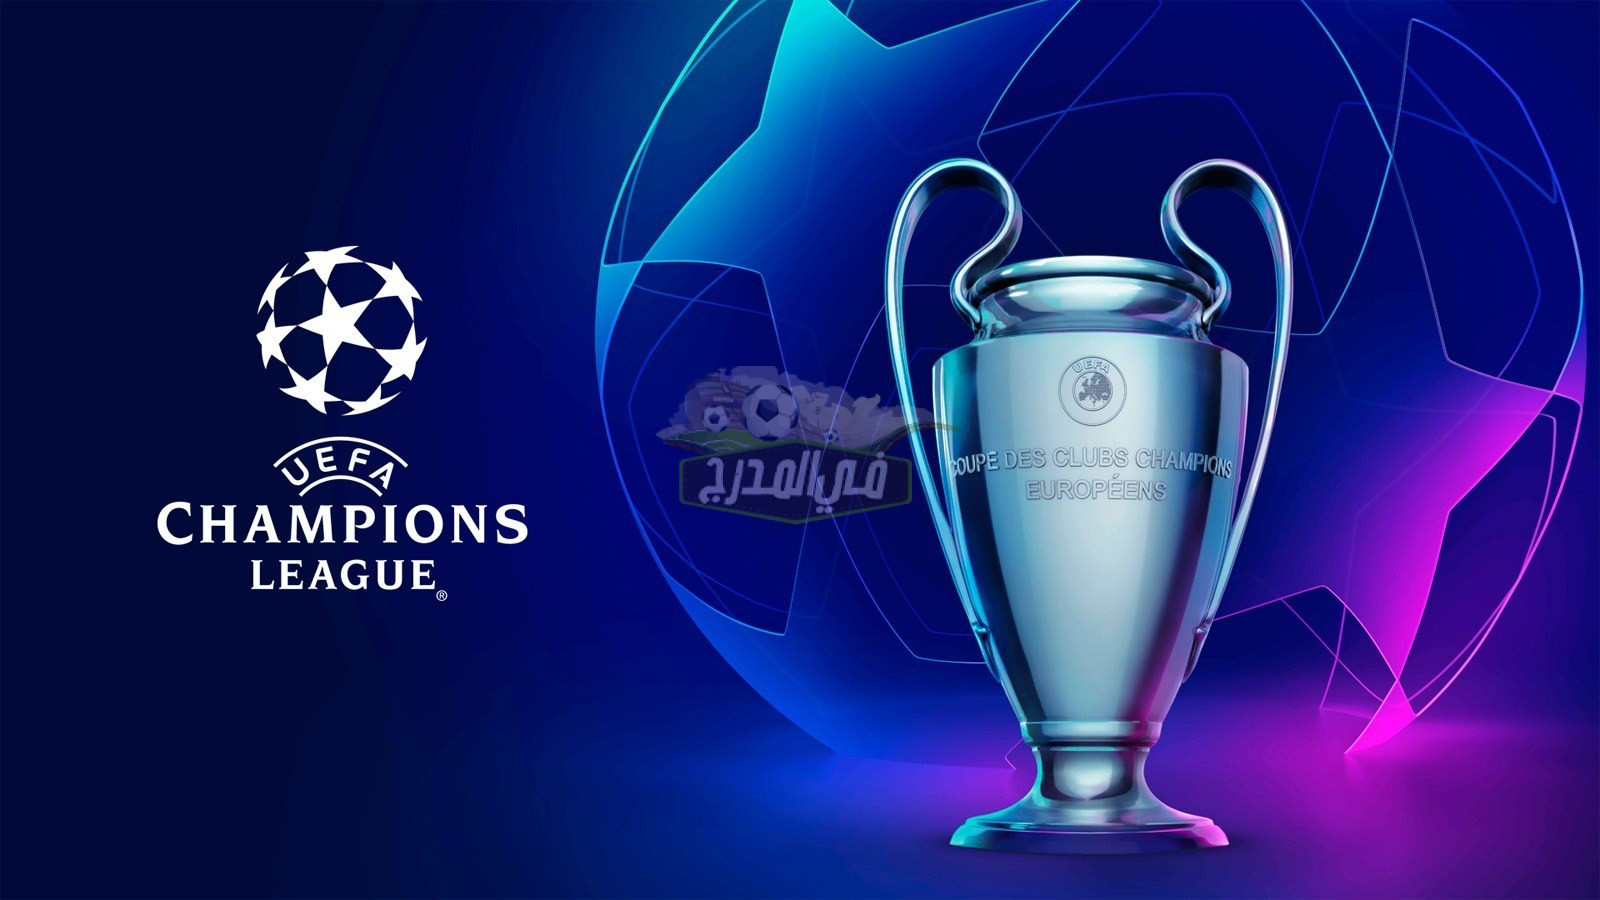 رسميًا – الإعلان عن مواعيد دوري أبطال أوروبا للموسم الجديد 2021/2022